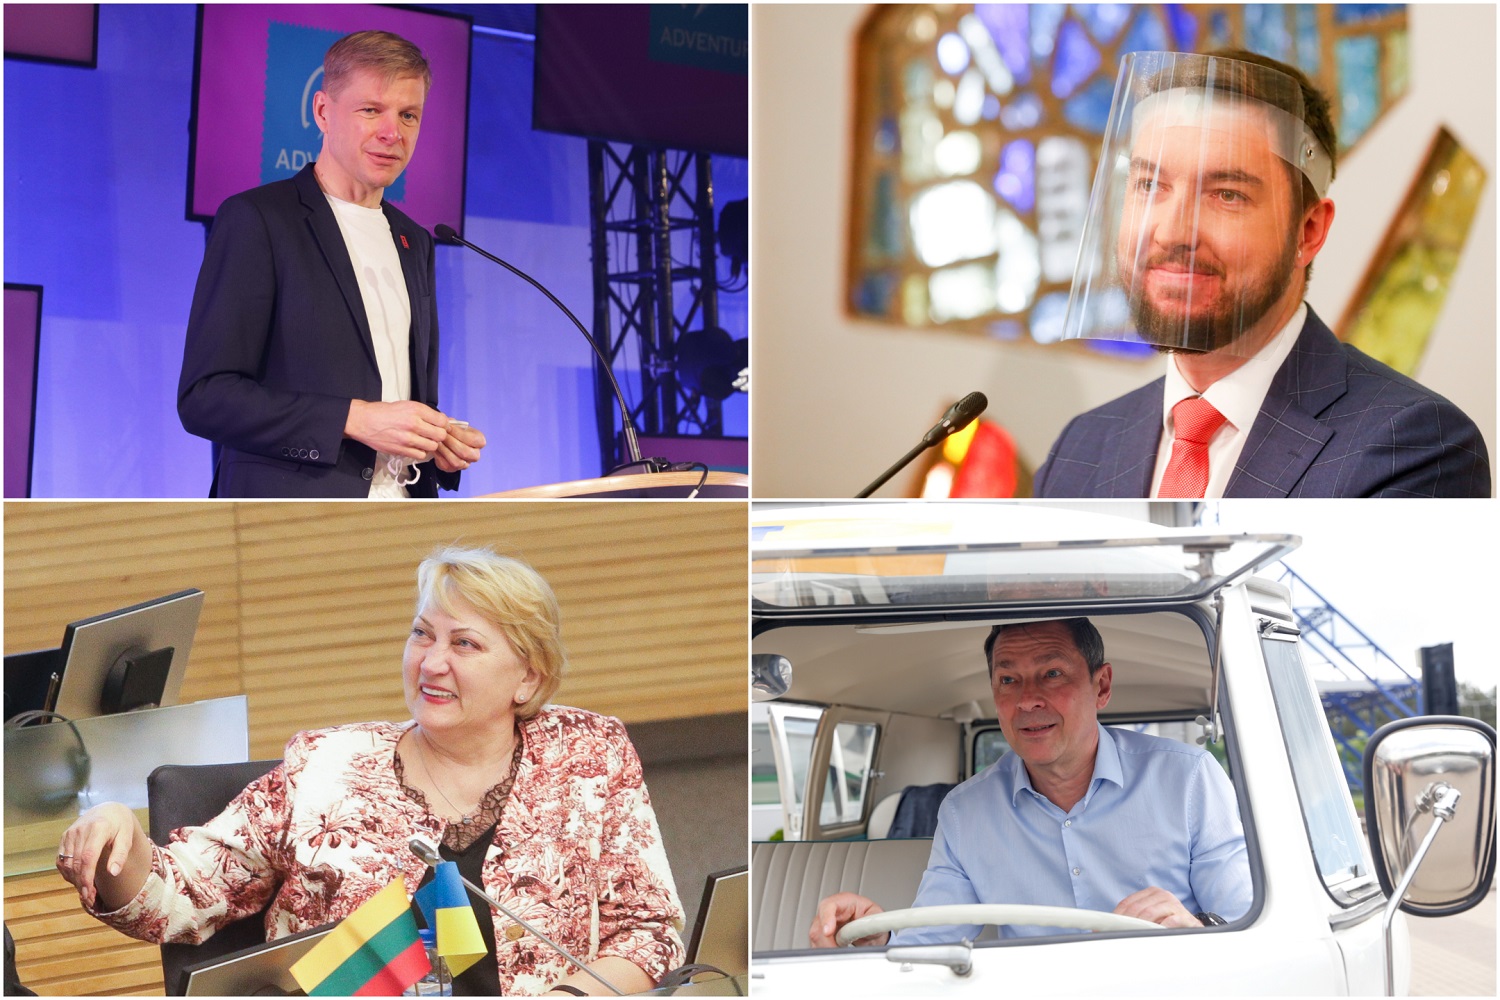 Politinės partijos ruošiasi Vilniaus mero rinkimams: ryškėja kandidatai ir galimos sąjungos